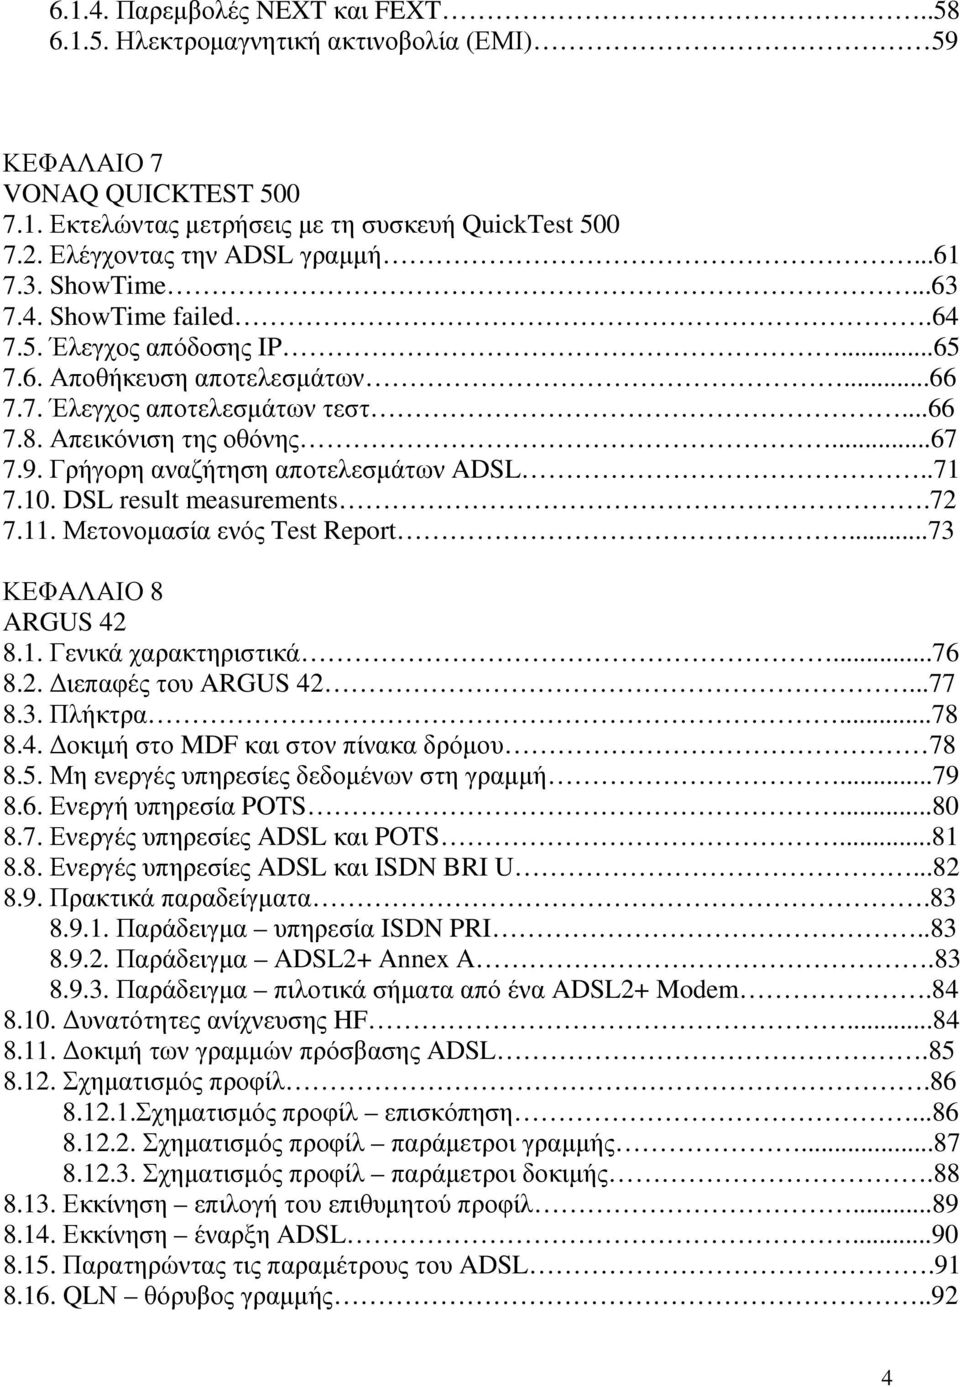 Γρήγορη αναζήτηση αποτελεσµάτων ADSL..71 7.10. DSL result measurements.72 7.11. Μετονοµασία ενός Test Report...73 ΚΕΦΑΛΑΙΟ 8 ARGUS 42 8.1. Γενικά χαρακτηριστικά...76 8.2. ιεπαφές του ARGUS 42...77 8.